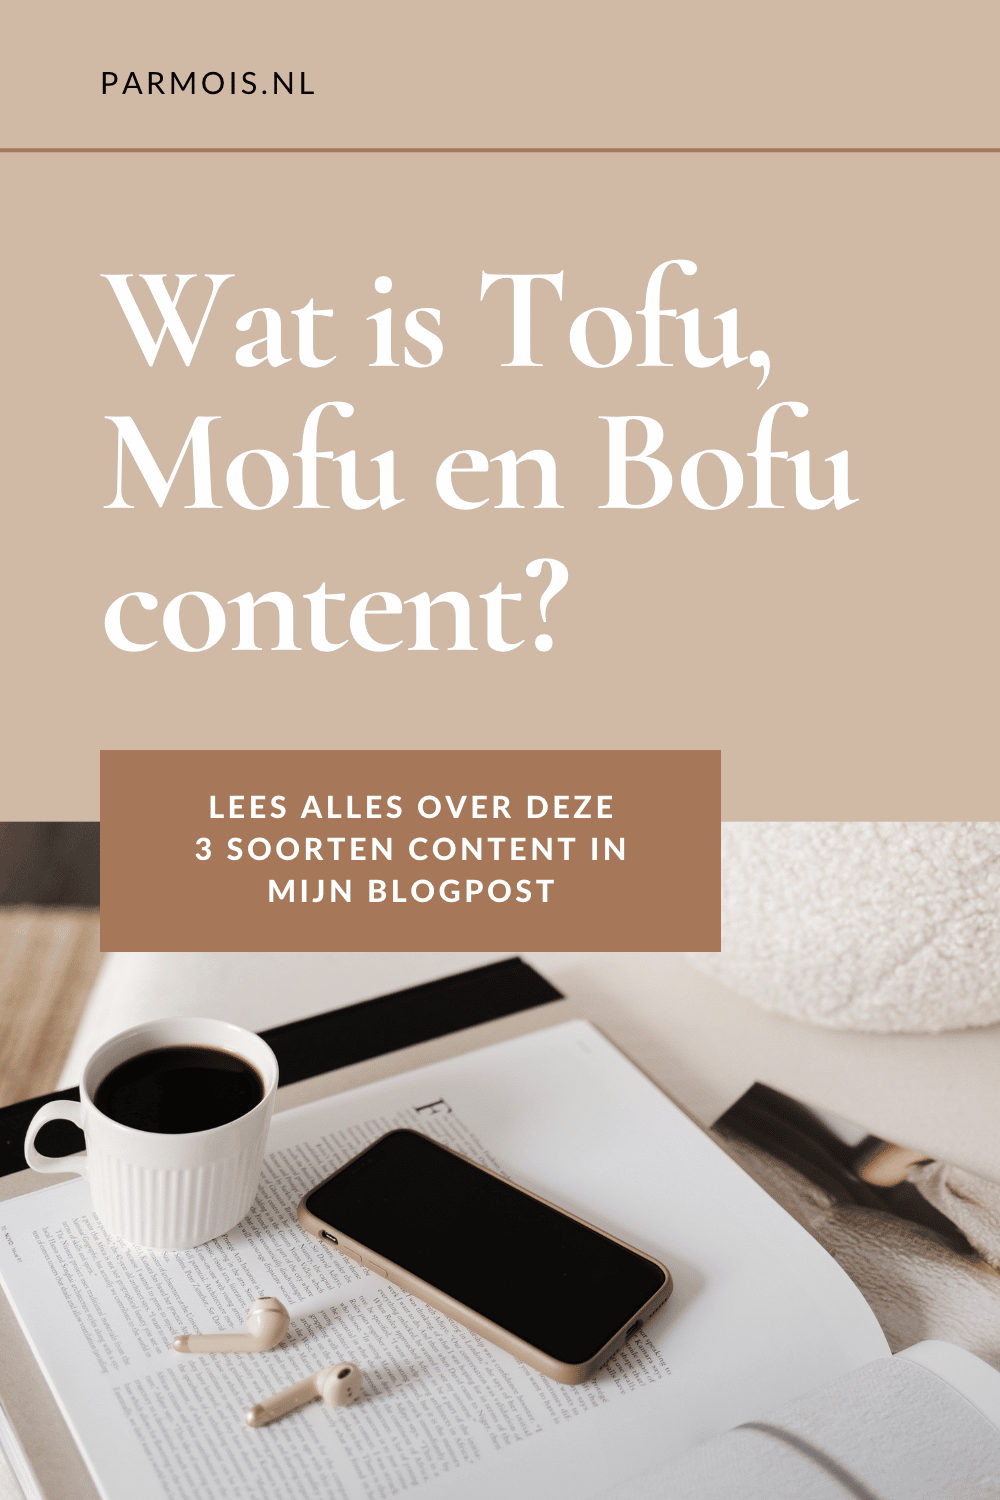 3 soorten content: ToFu, Mofu en BoFu